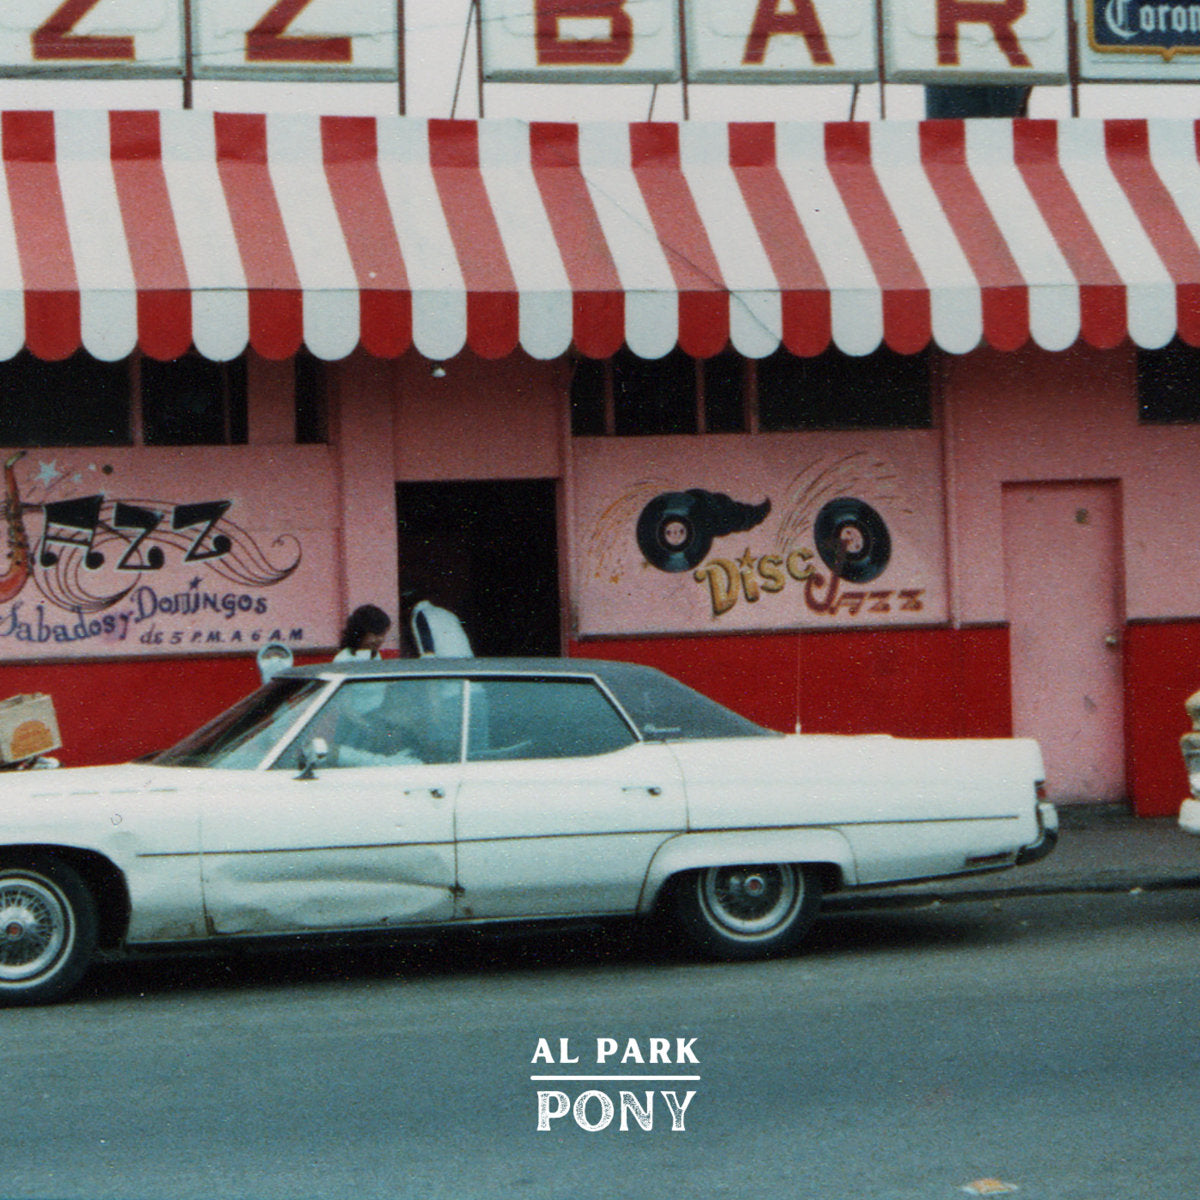 Al Park - Pony | Buy on CD